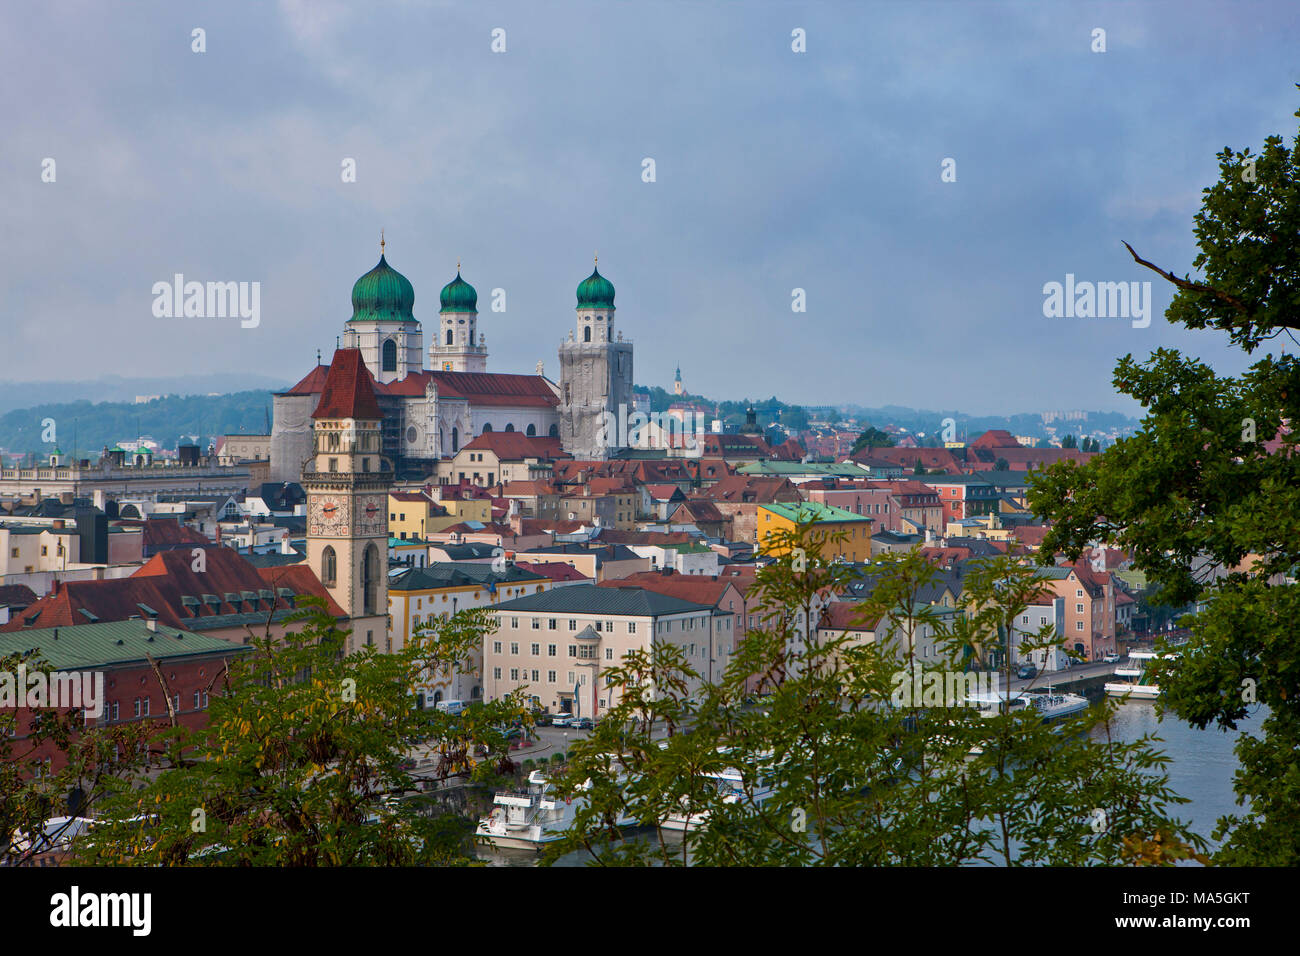 Oublier sur le Danube et Passau, Allemagne Banque D'Images